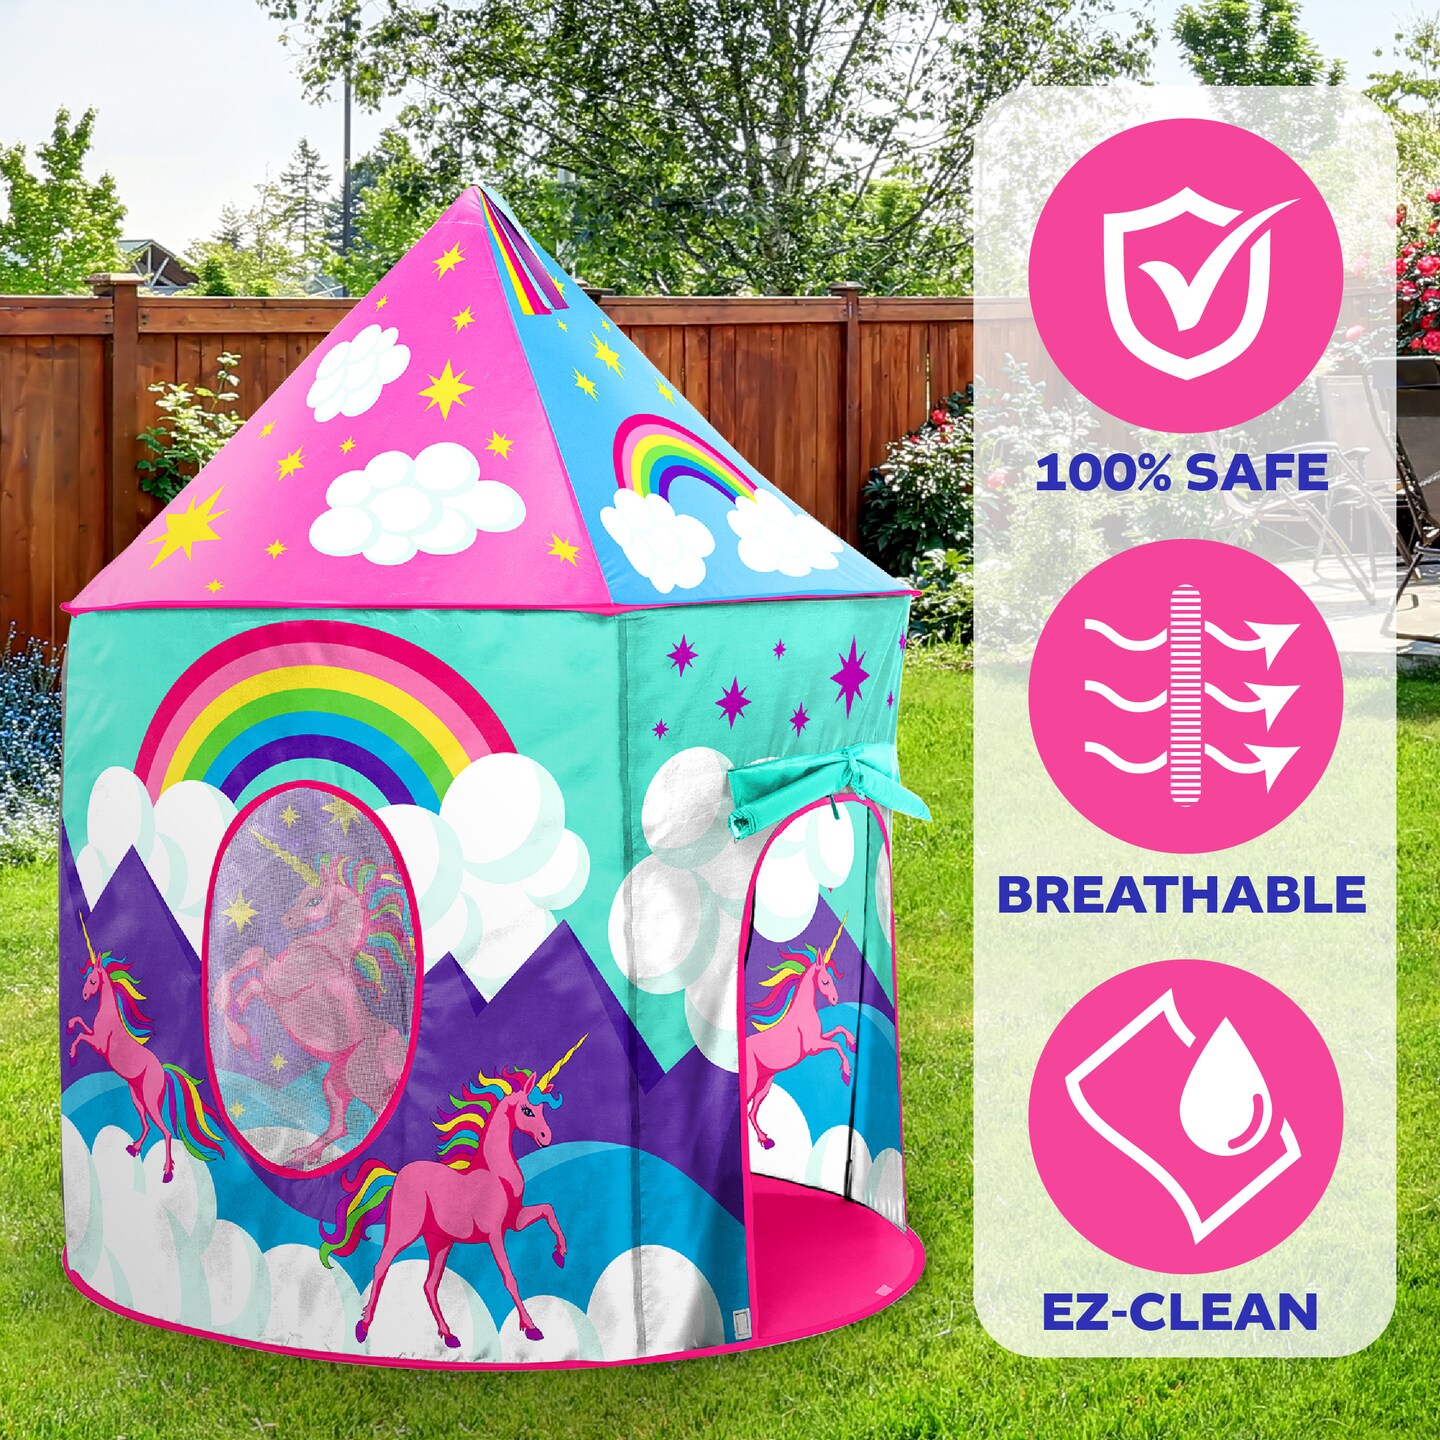 USA Toyz Unicorn Pop Up Tent for Kids